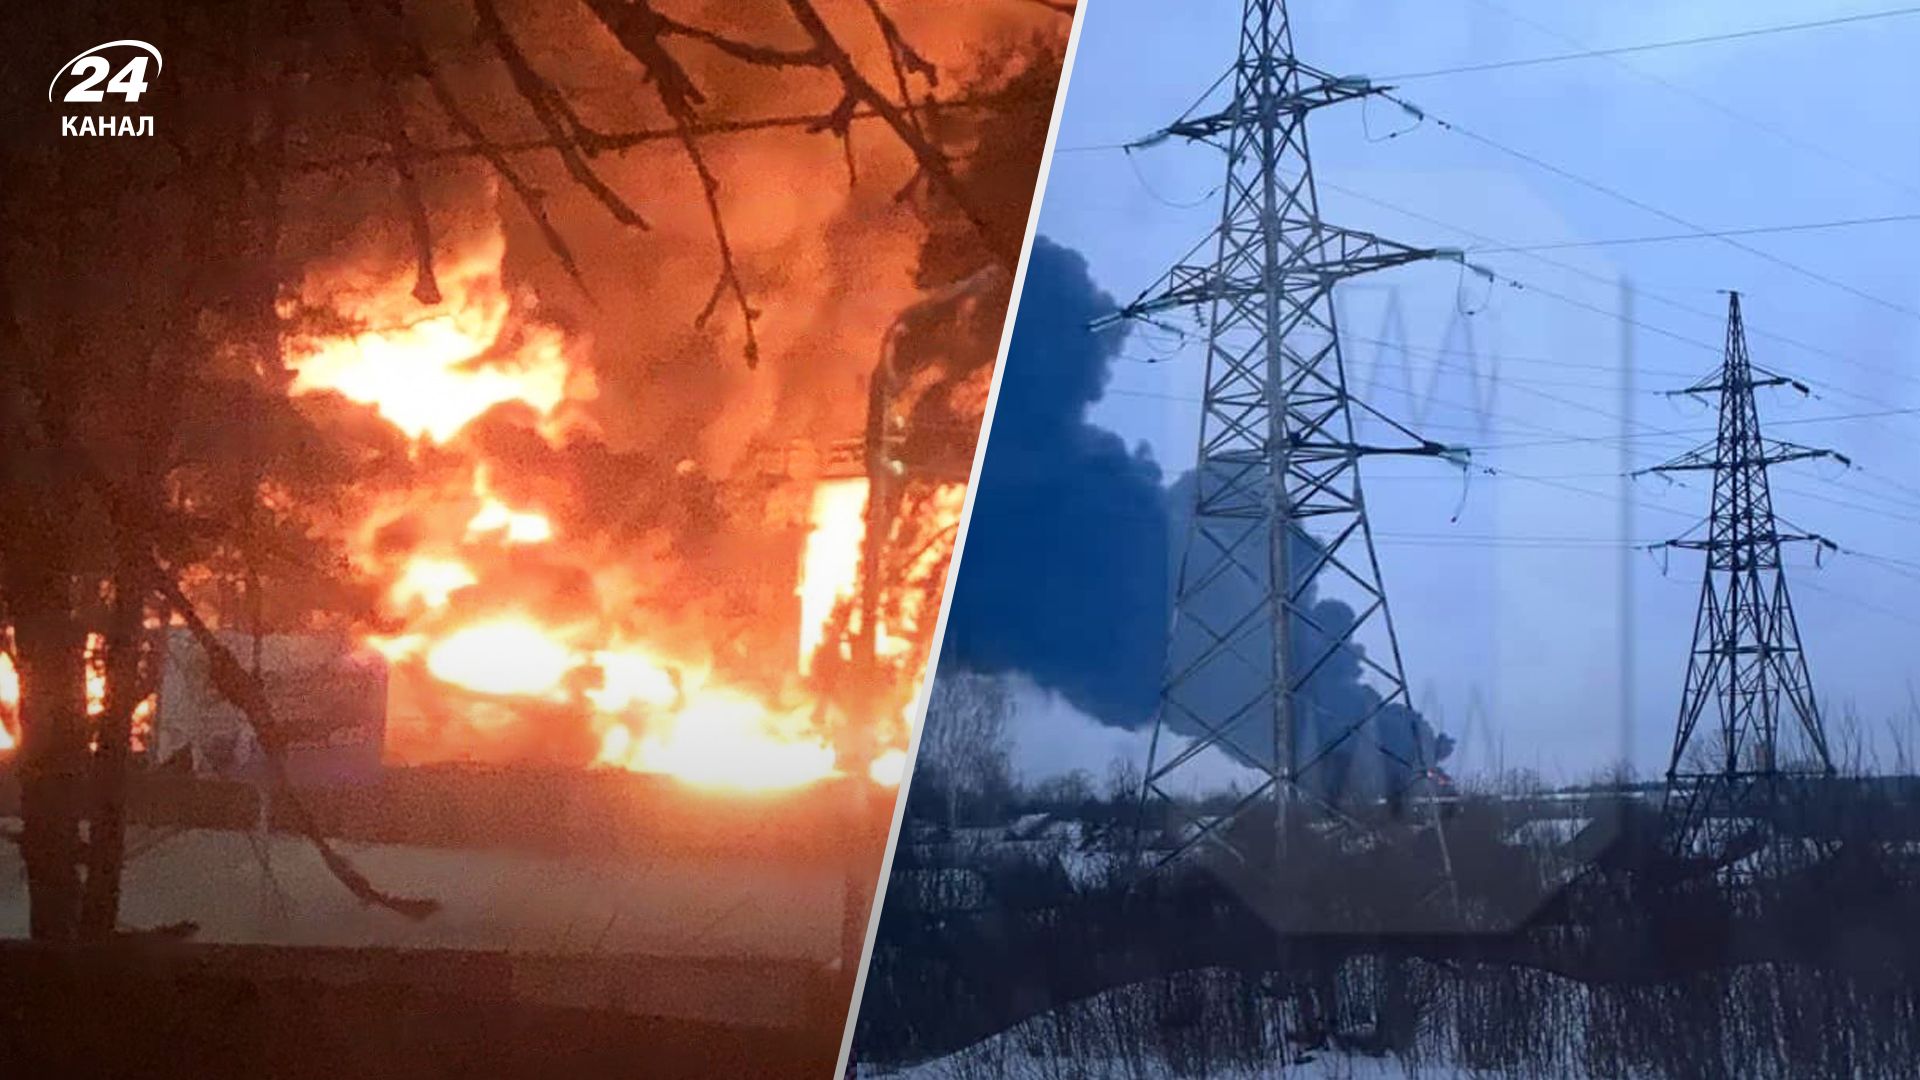 Россияне жалуются из-за пожара на нефтебазе в Клинцах - 24 Канал